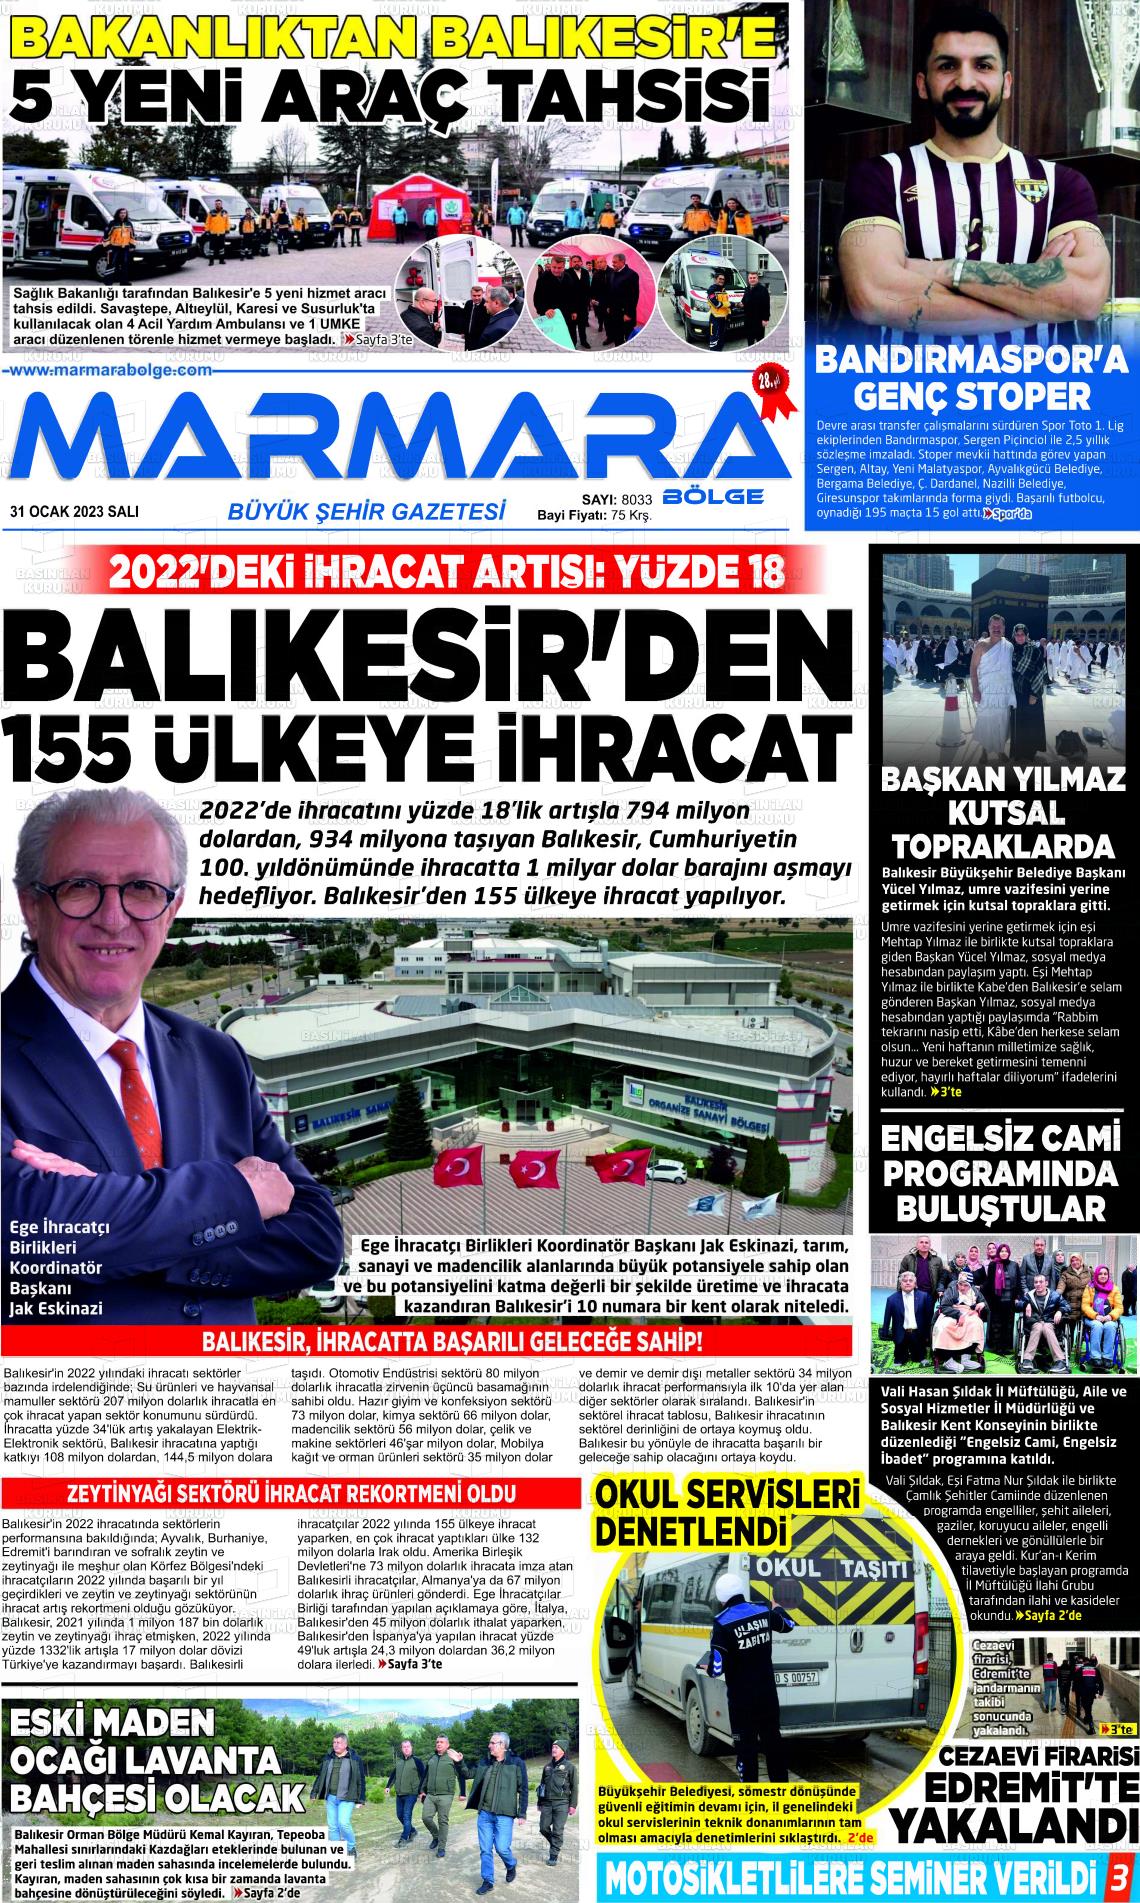 31 Ocak 2023 Marmara Bölge Gazete Manşeti